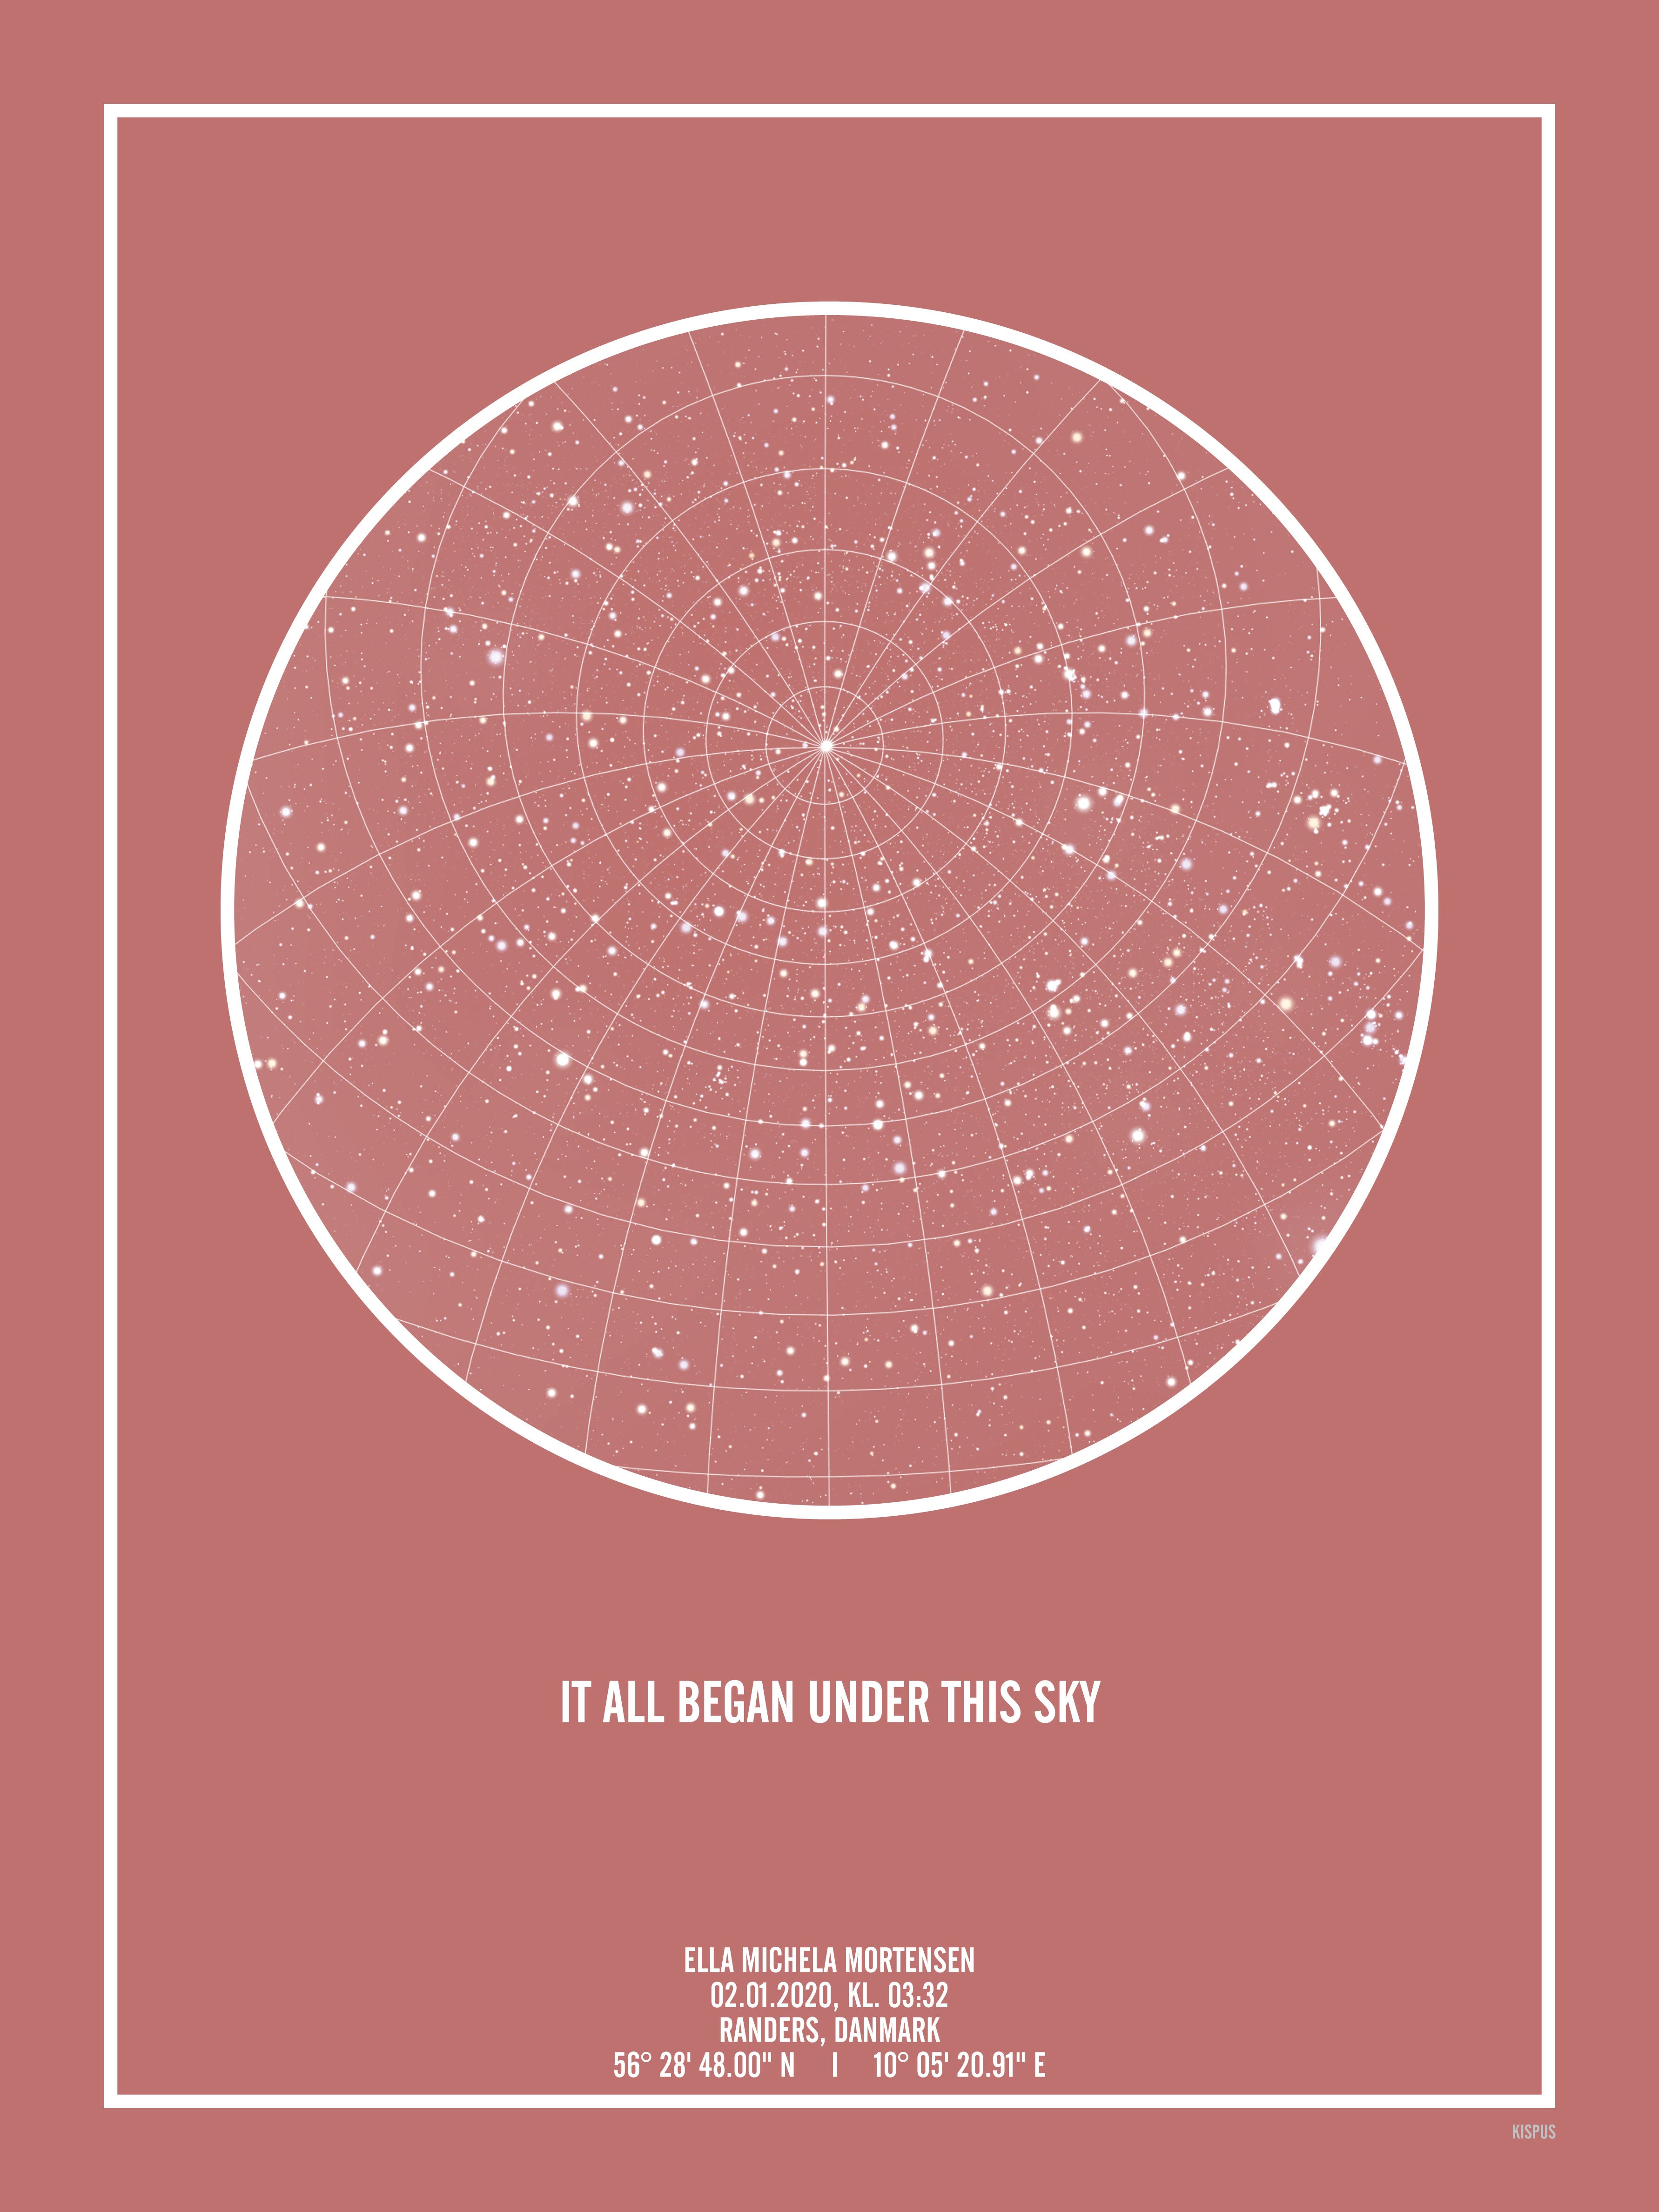 Se PERSONLIG STJERNEHIMMEL PLAKAT (BLUSH) - A4 / Hvid tekst + blush-farvet stjernehimmel / Stjernehimmel med gitter hos KISPUS